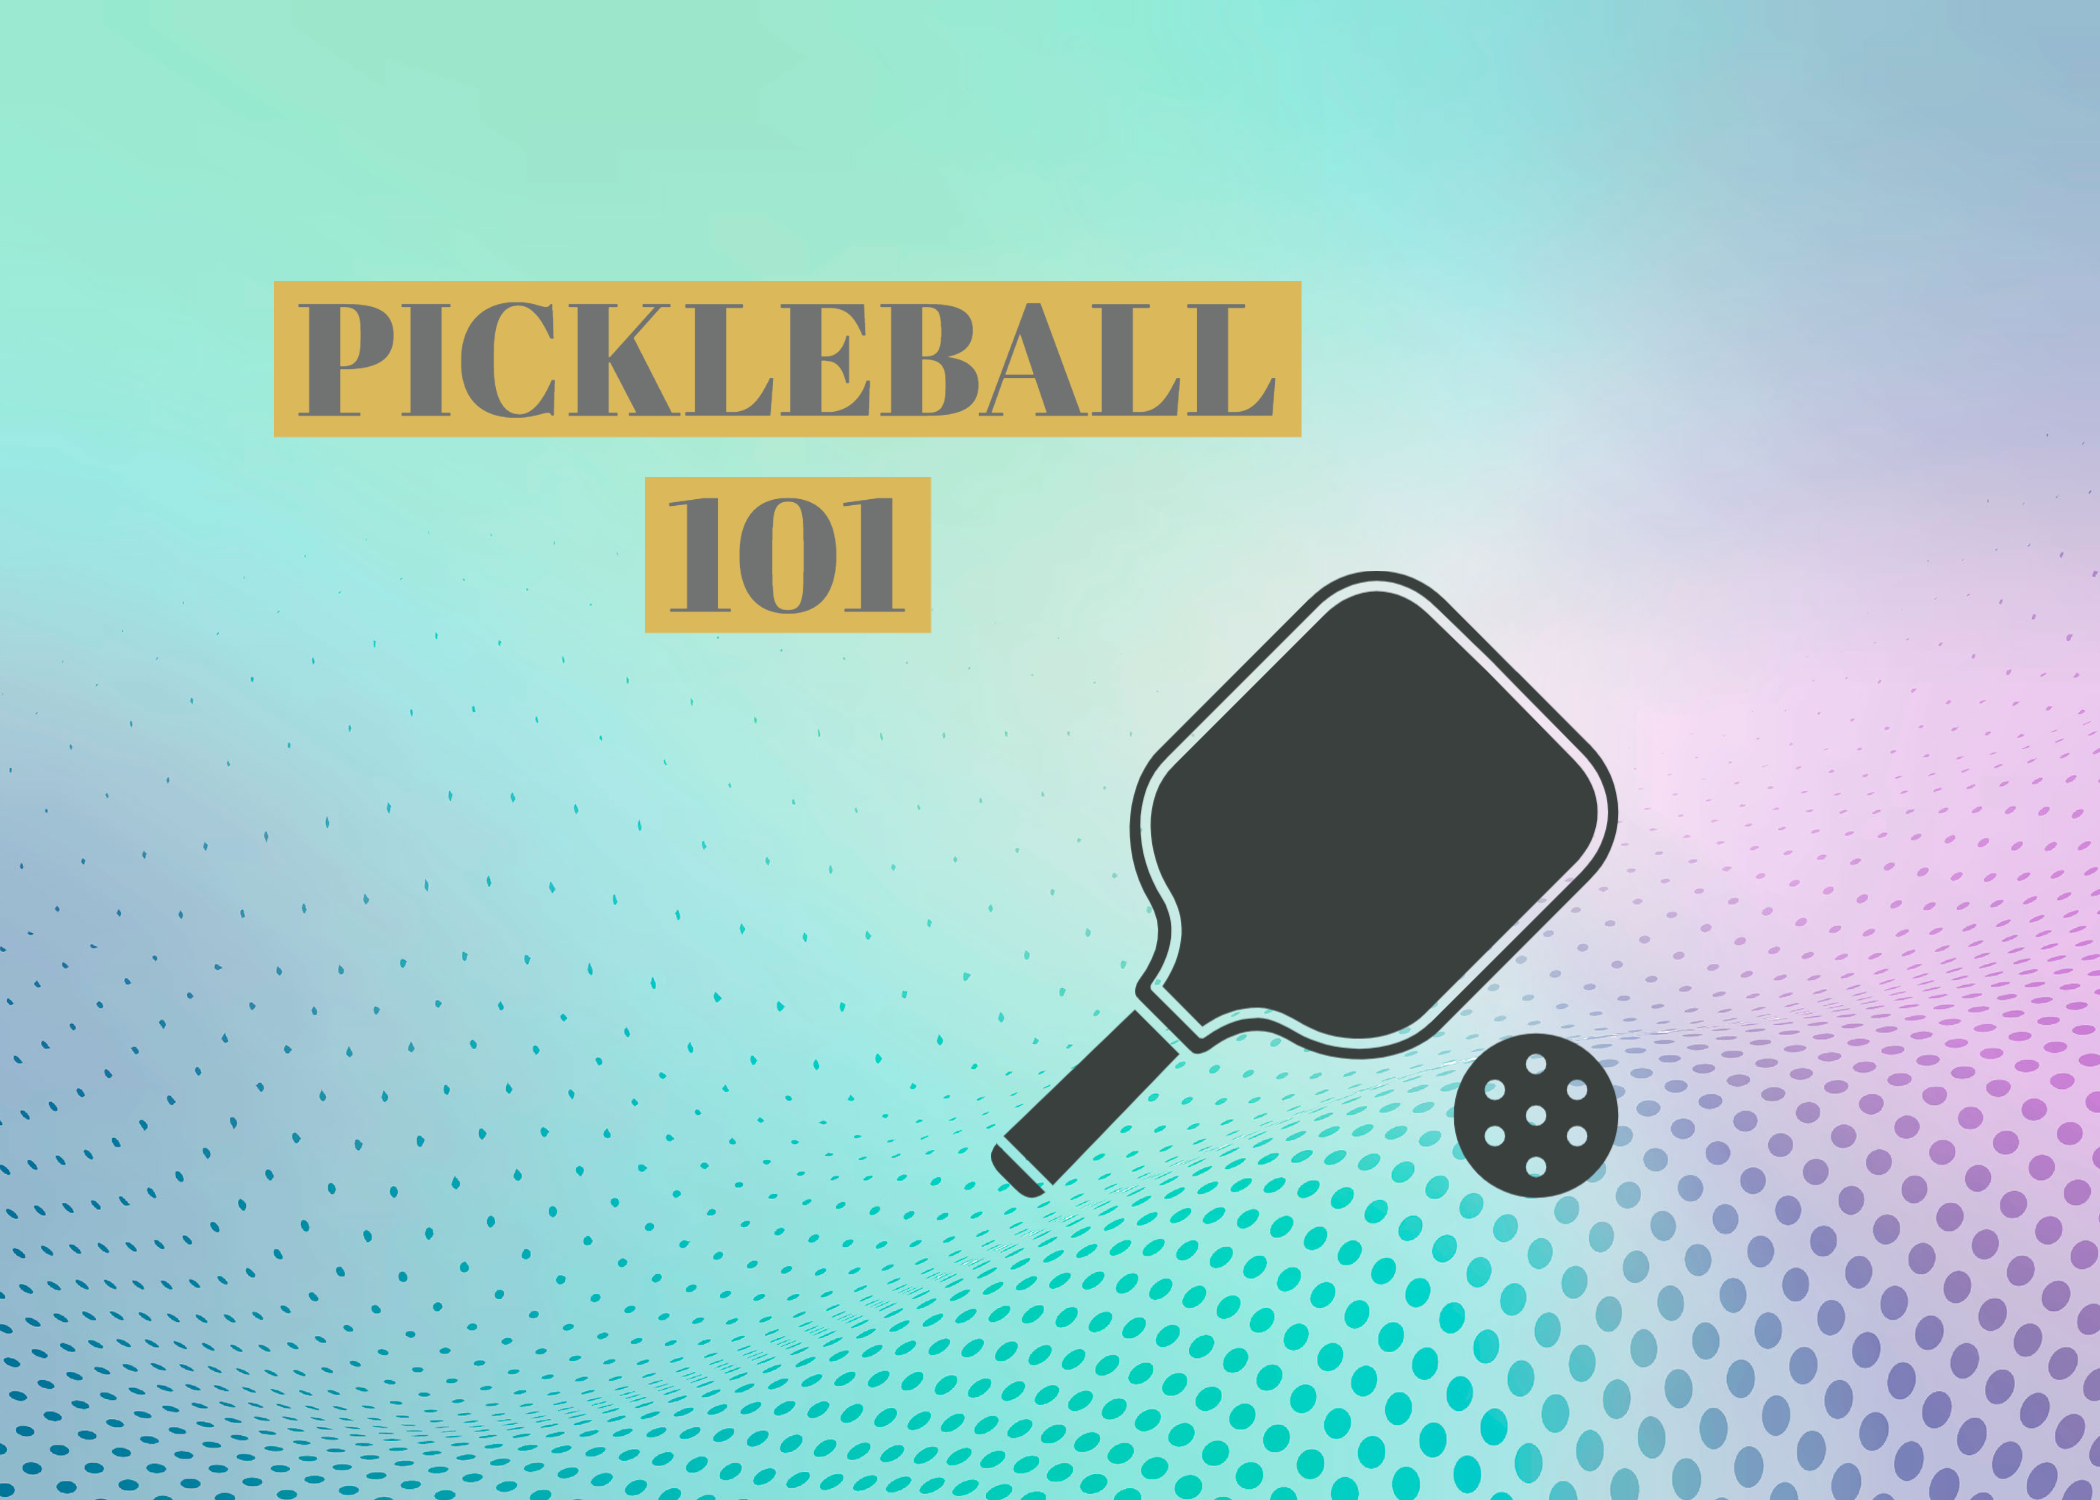 pickleball 101